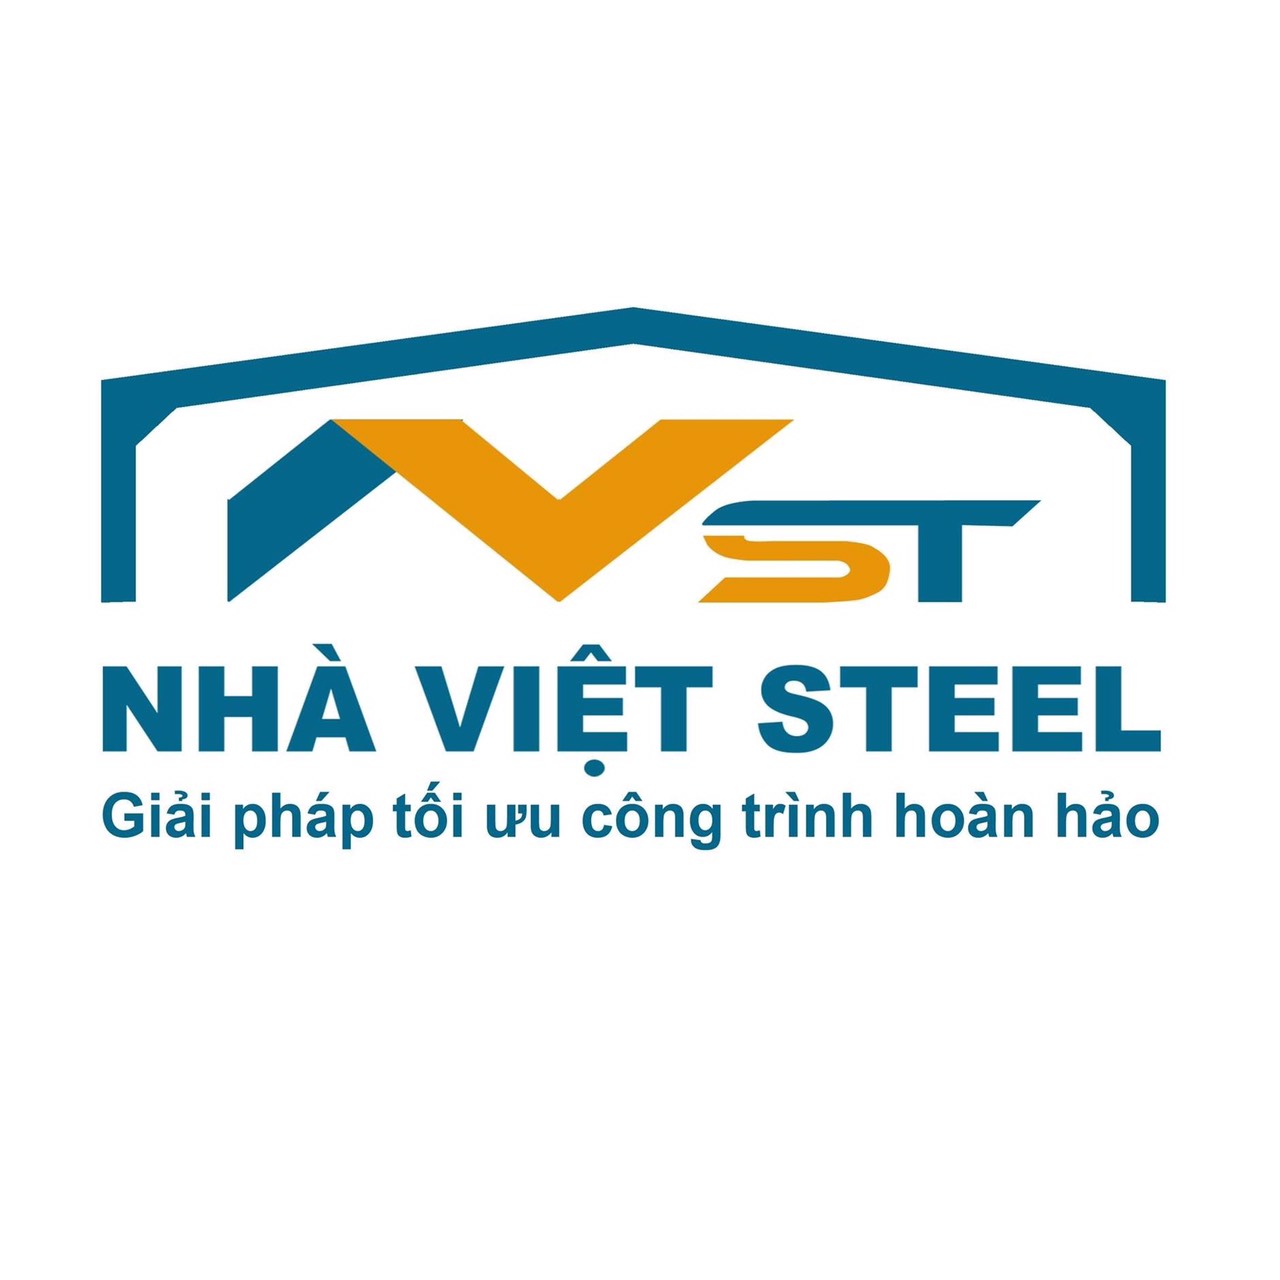  				Công ty TNHH TM&SX Kết cấu thép Nhà Việt				